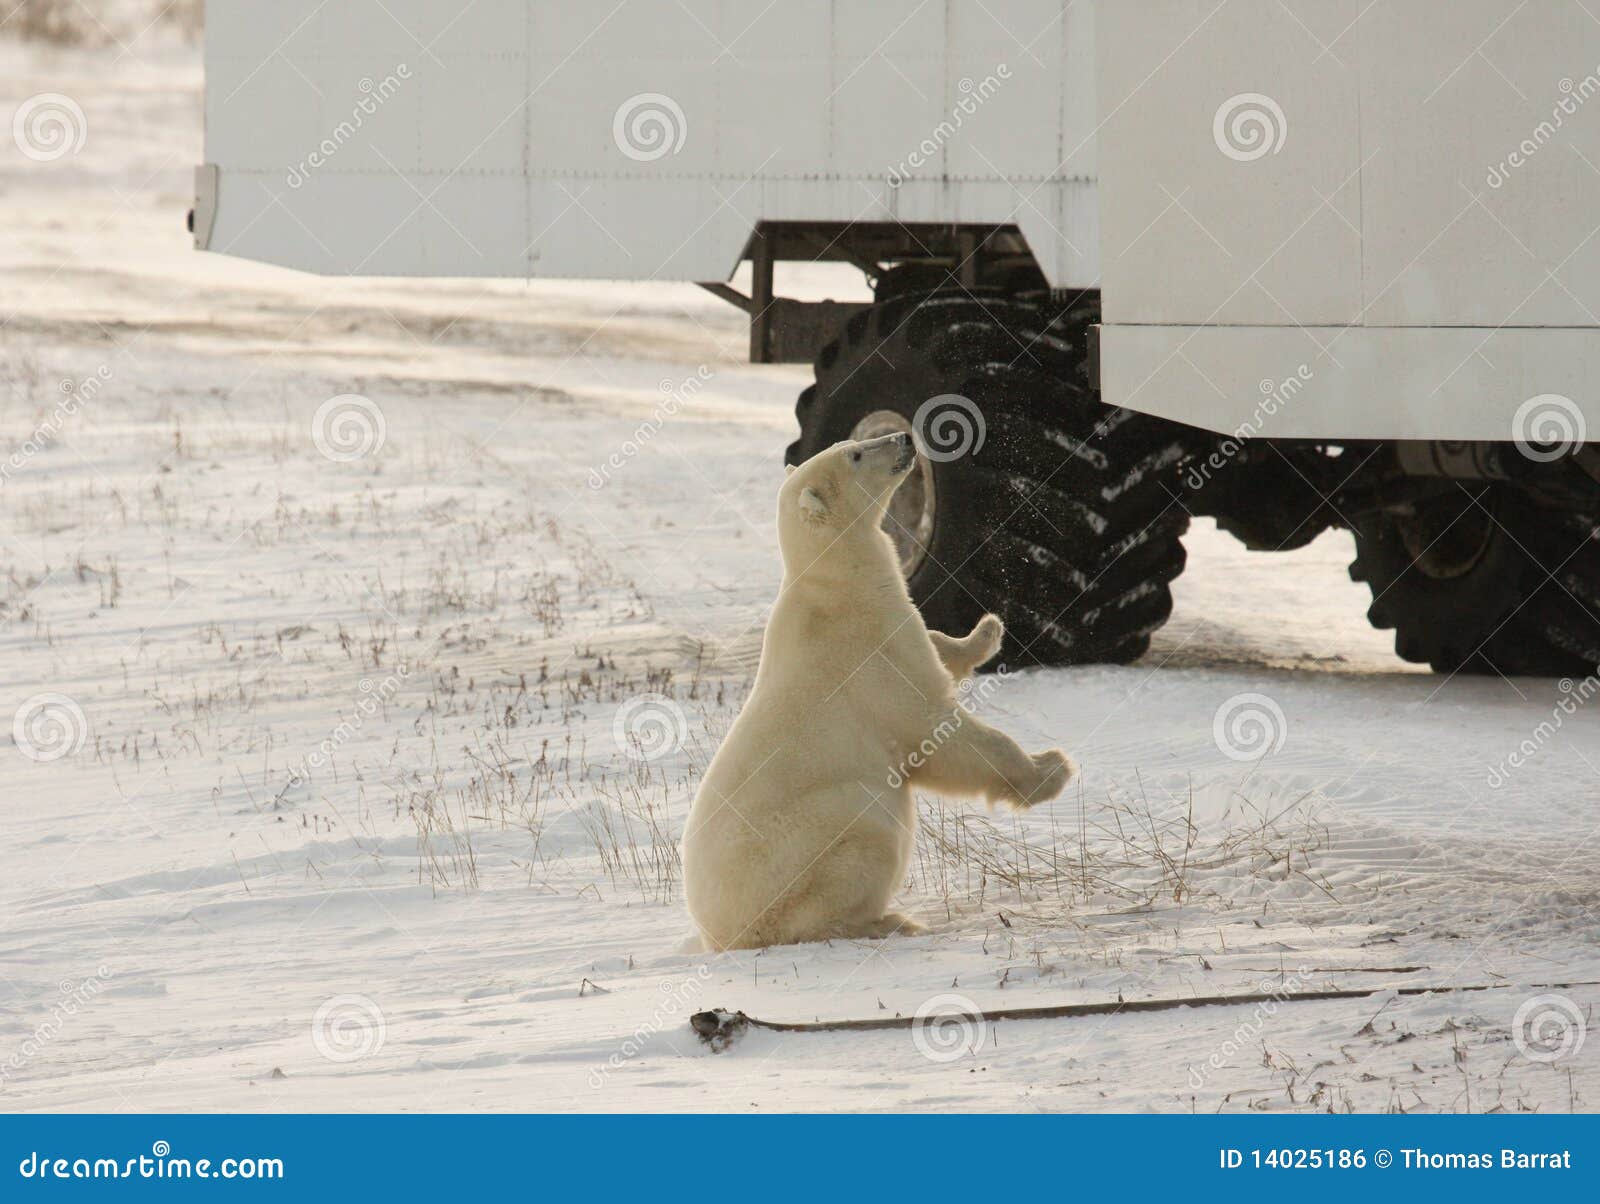 polar bear and a tundra buggy